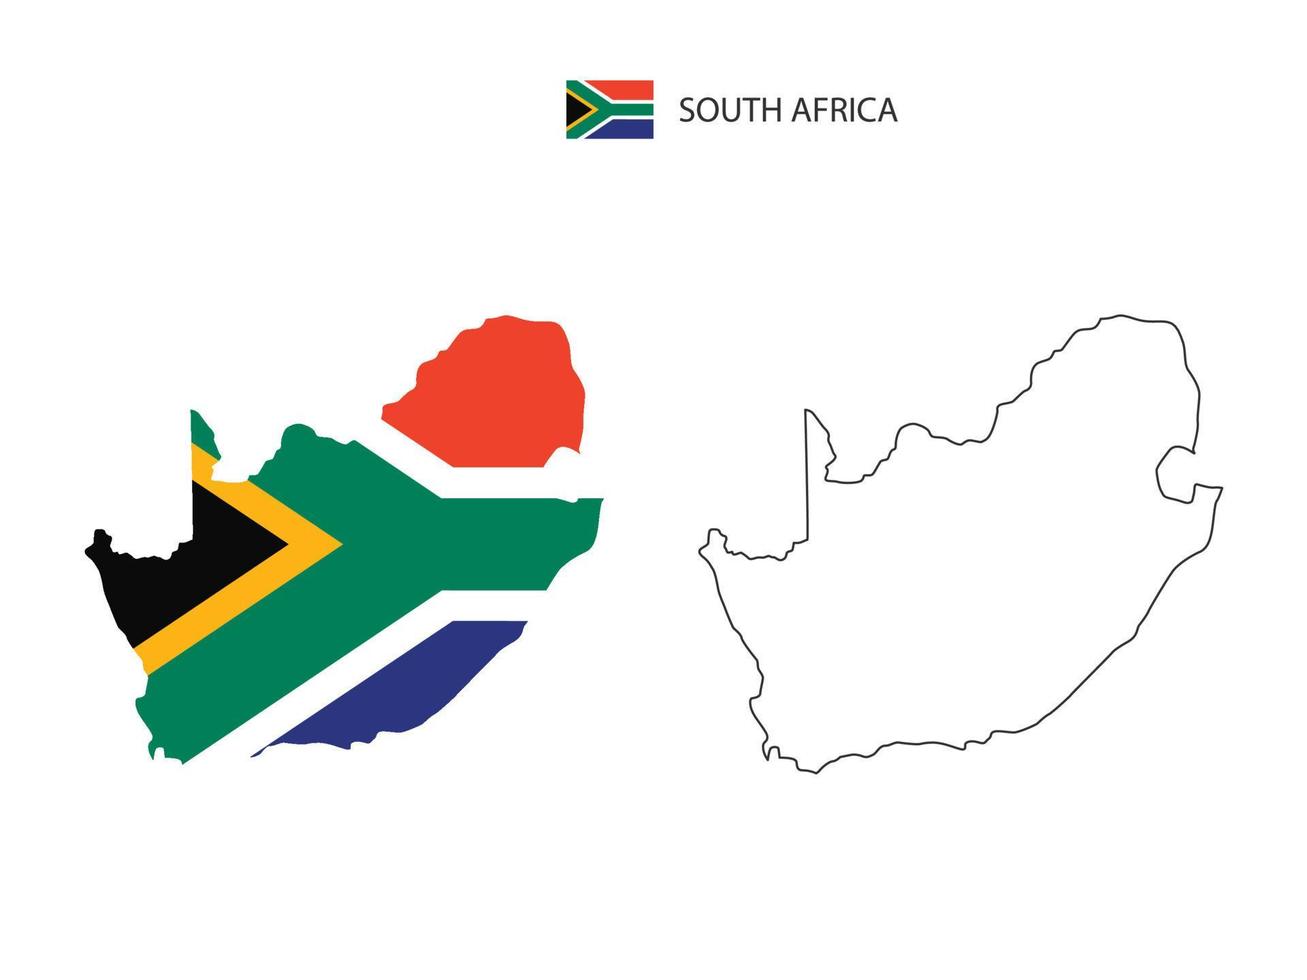 vetor da cidade do mapa da áfrica do sul dividido pelo estilo de simplicidade do contorno. tem 2 versões, versão de linha fina preta e cor da versão da bandeira do país. ambos os mapas estavam no fundo branco.